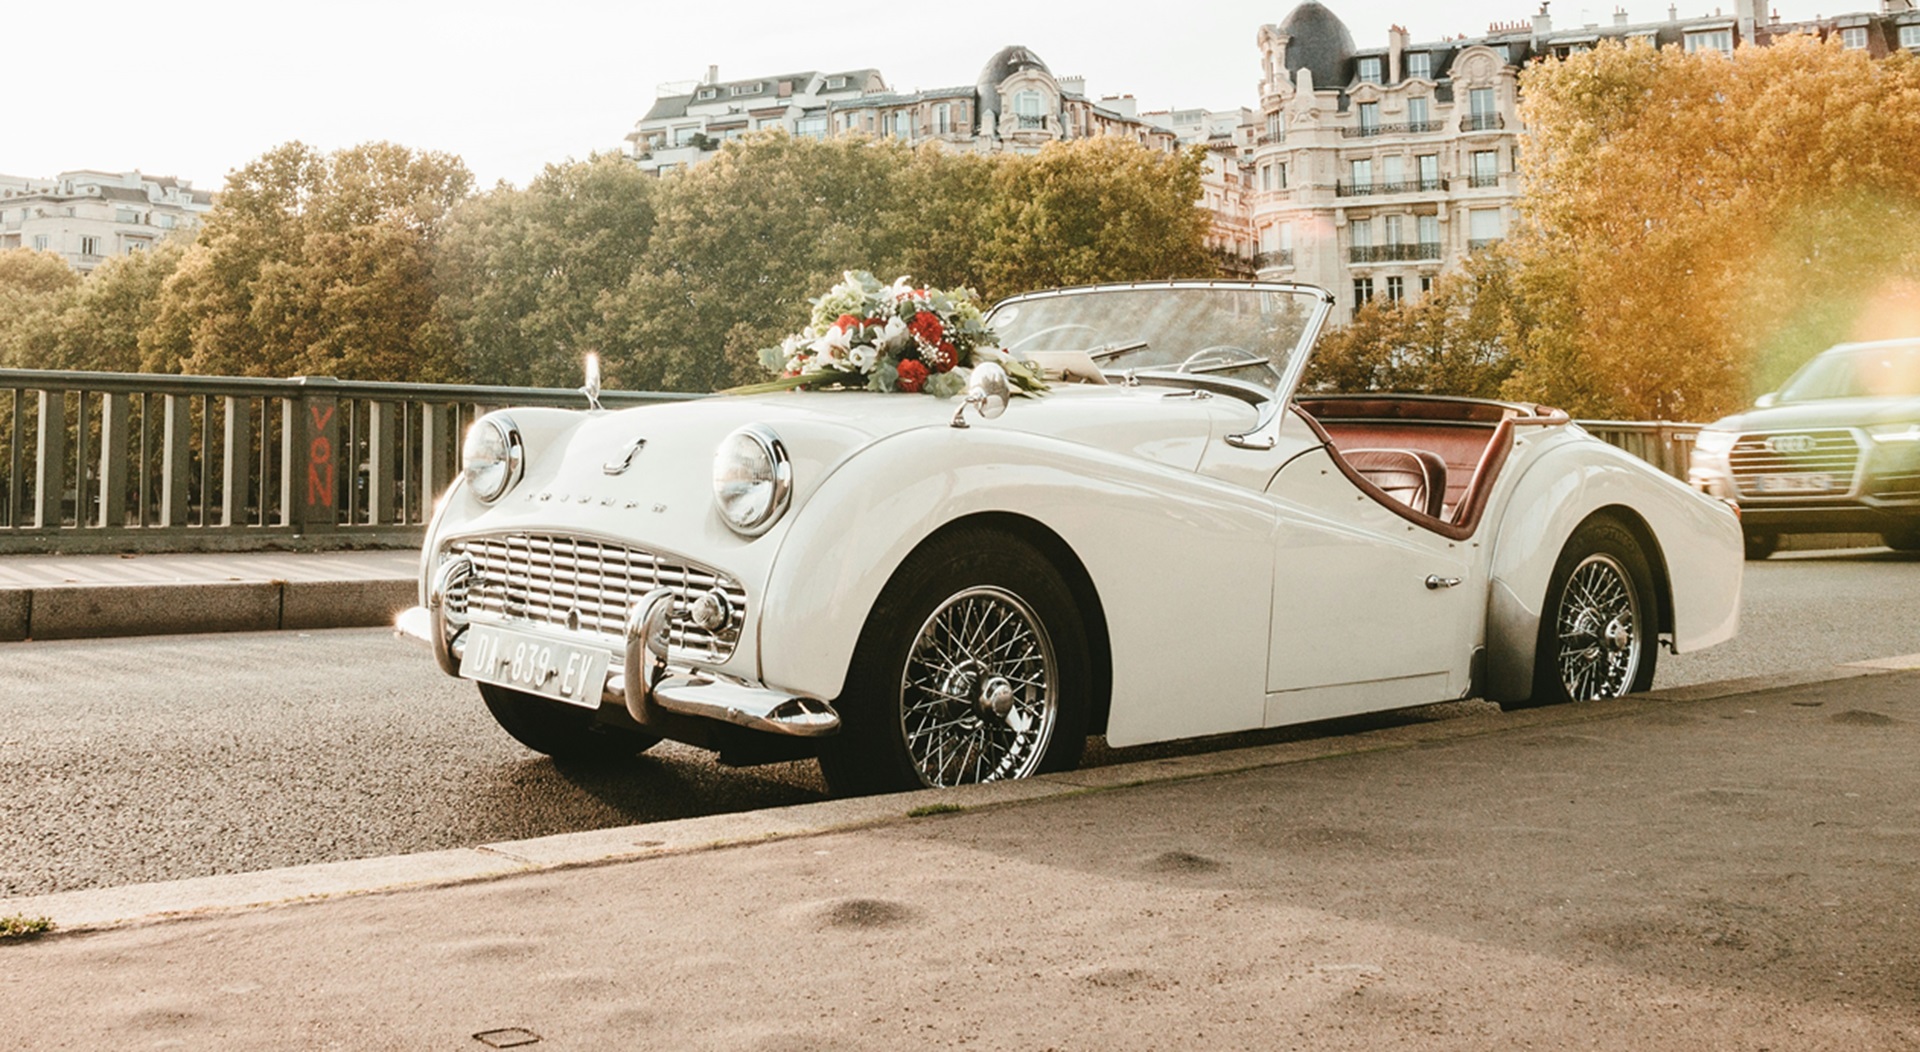 Location de voiture de luxe : comment louer un véhicule de prestige pour votre mariage ?